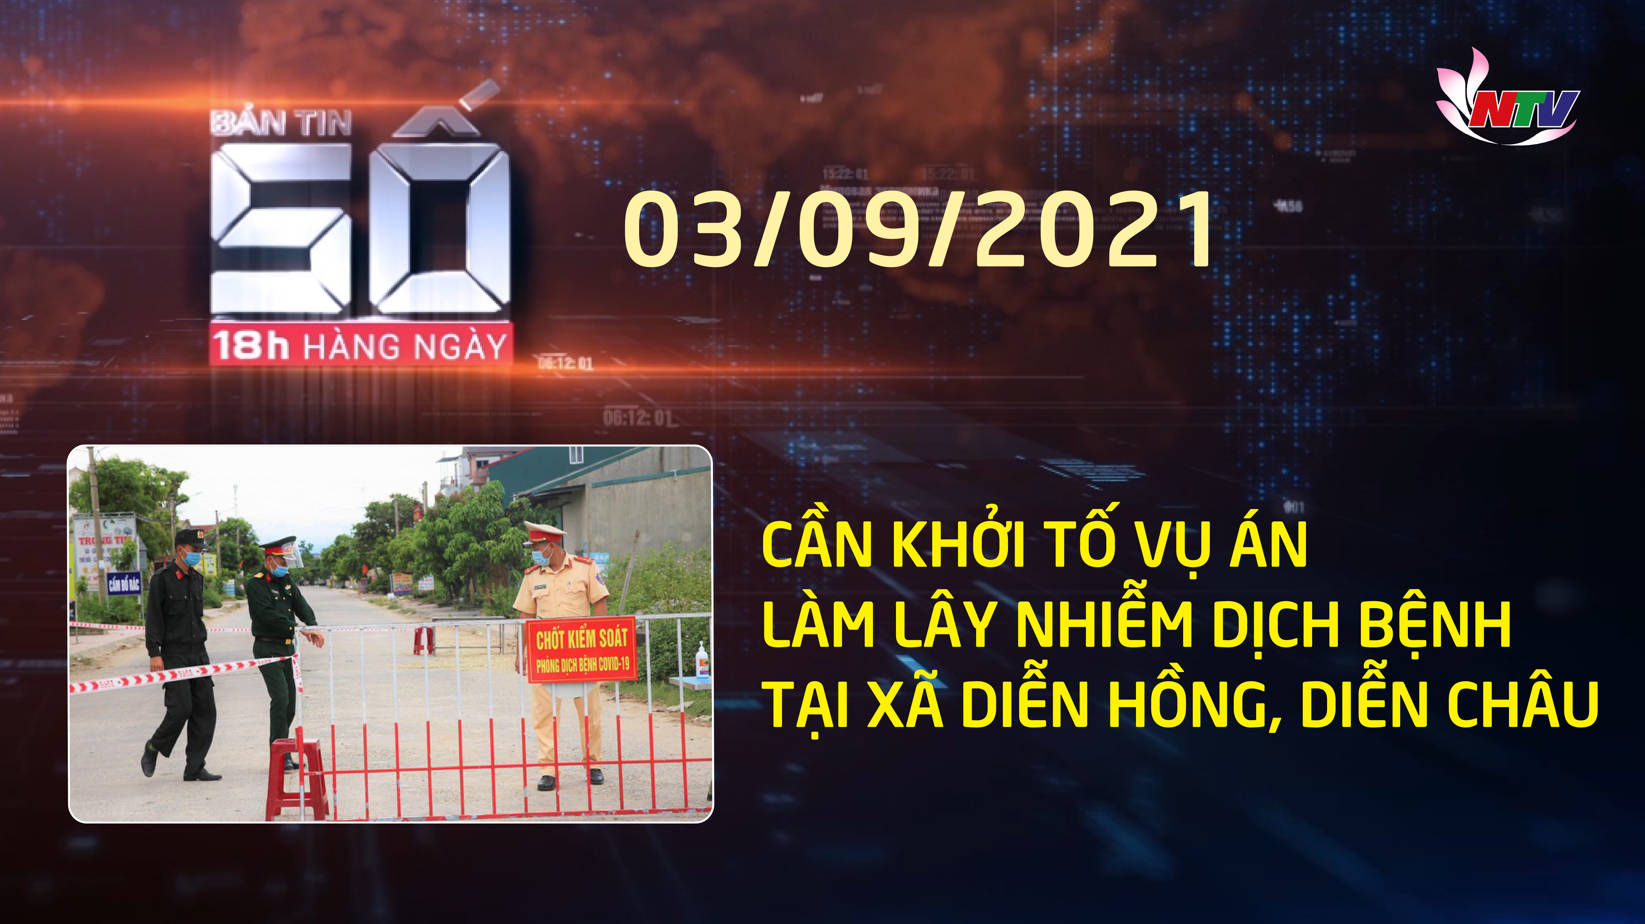 Bản tin SỐ 18h hàng ngày - 03/9/2021: Cần khởi tố vụ án làm lây nhiễm dịch bệnh tại xã Diễn Hồng